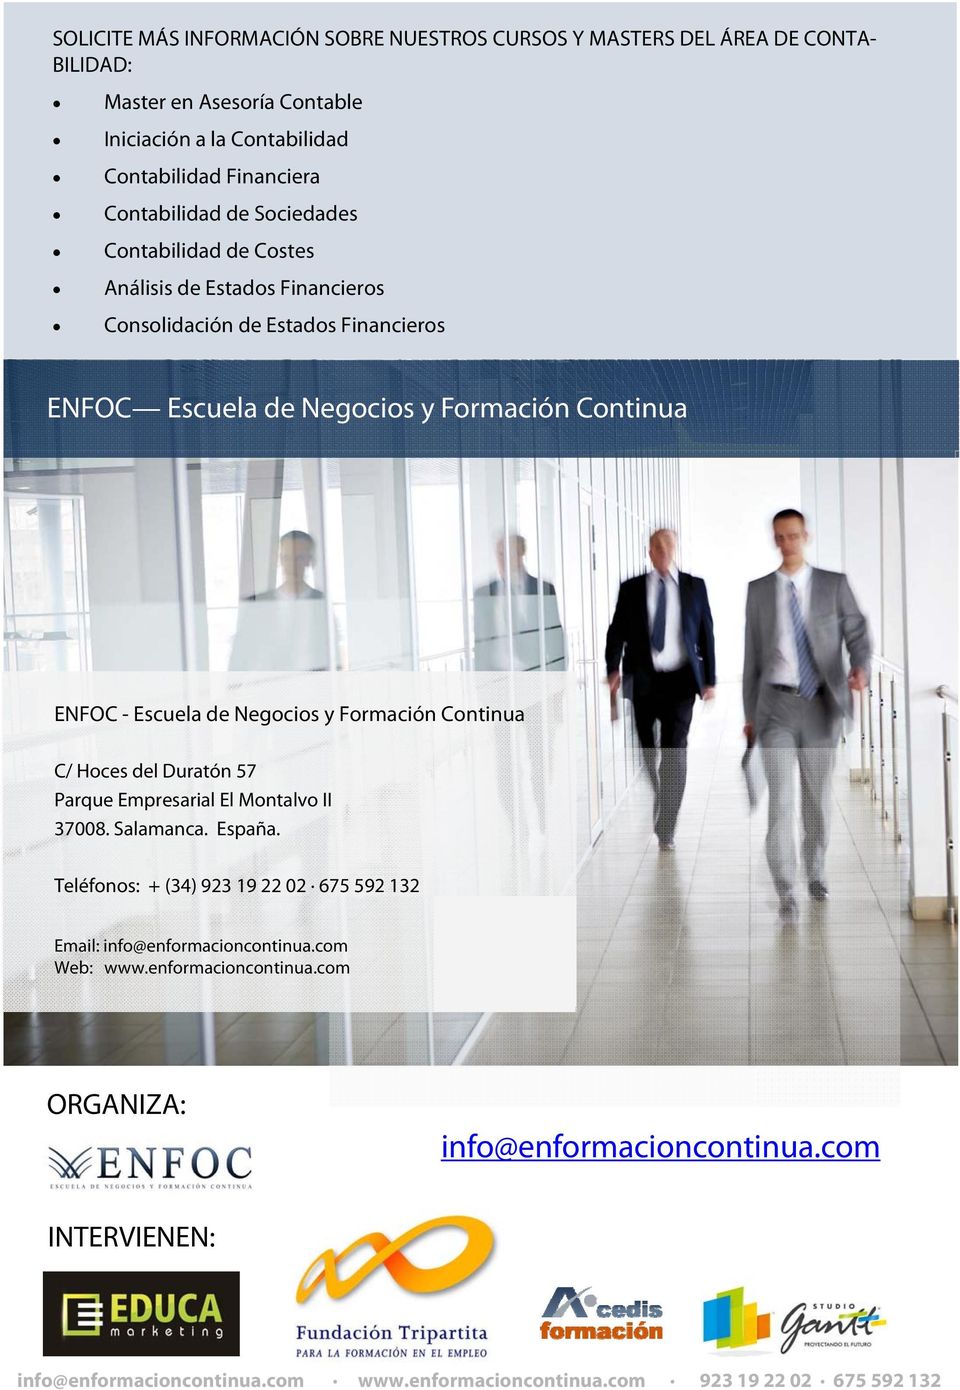 ENFOC - Escuela de Negocios y Formación Continua C/ Hoces del Duratón 57 Parque Empresarial El Montalvo II 37008. Salamanca. España.